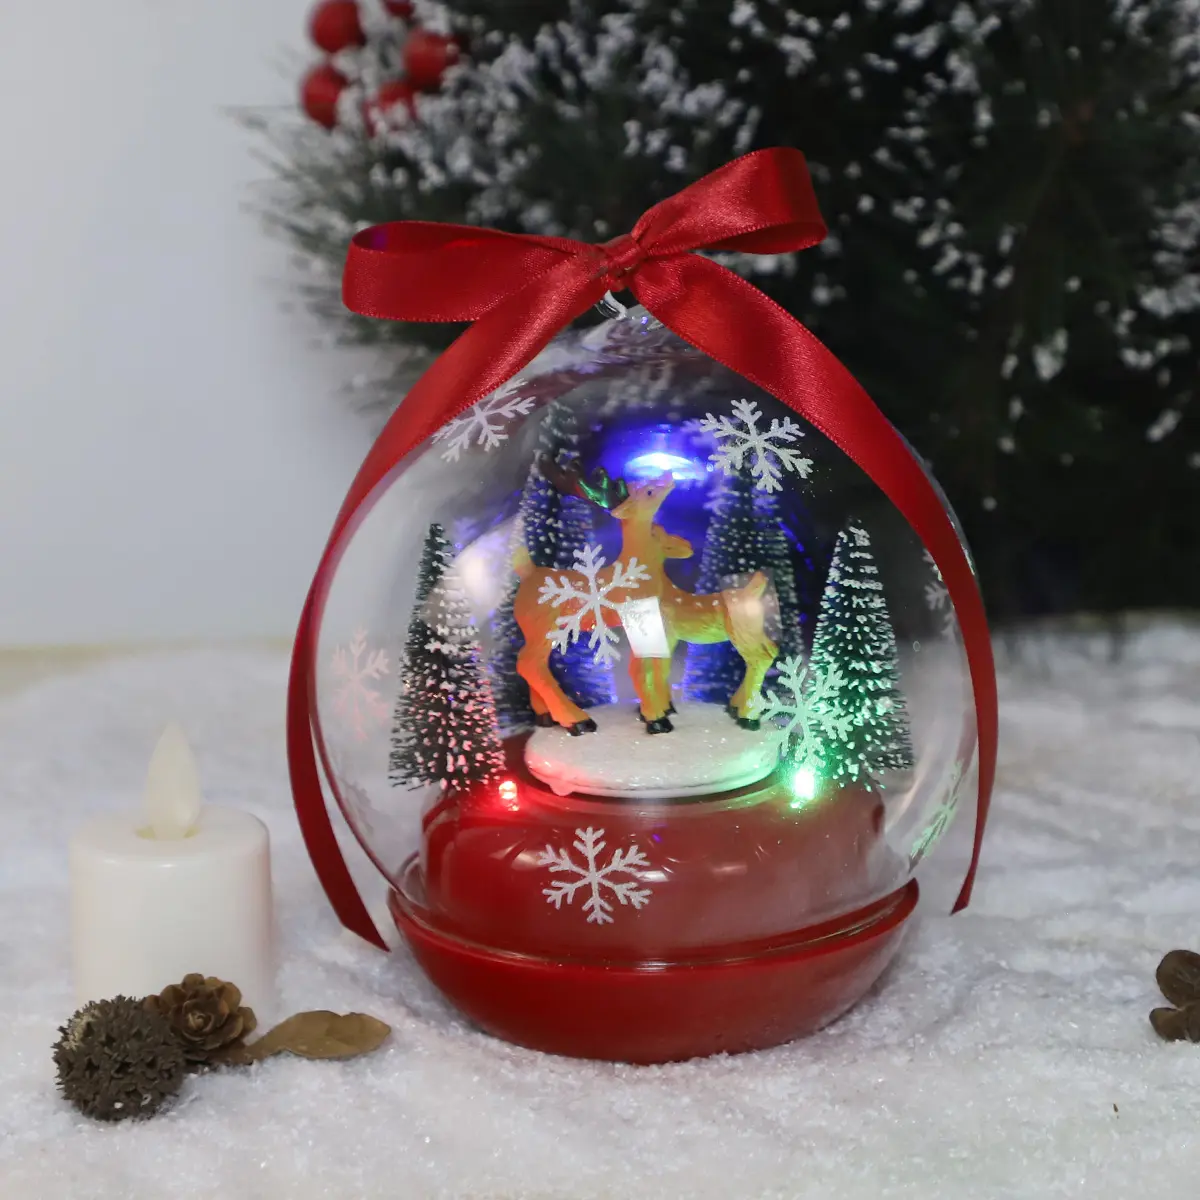 Base de caja de música de cristal giratoria personalizada, regalos de Navidad, figuritas de Papá Noel de resina en el interior, regalos de cumpleaños para niños